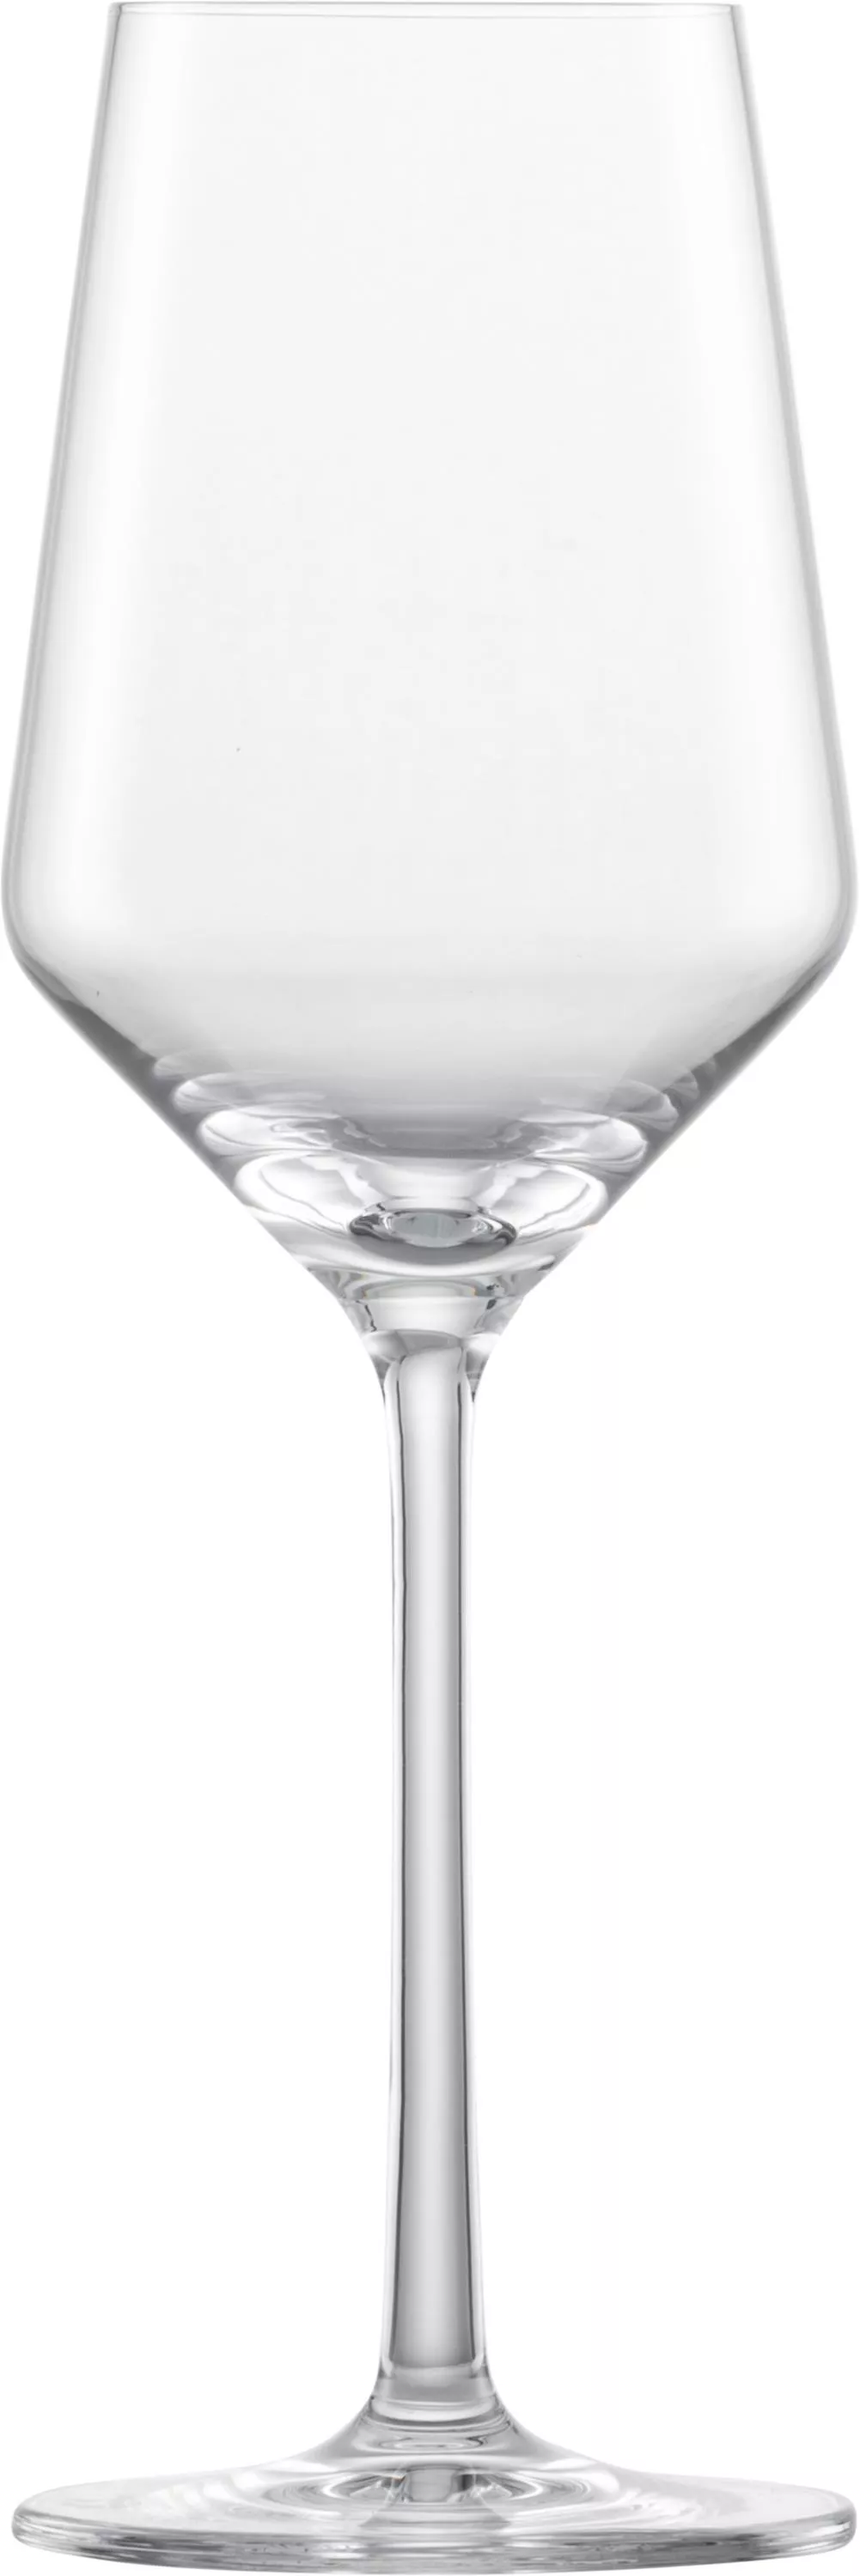 BELFESTA Rieslingglas 300 ml